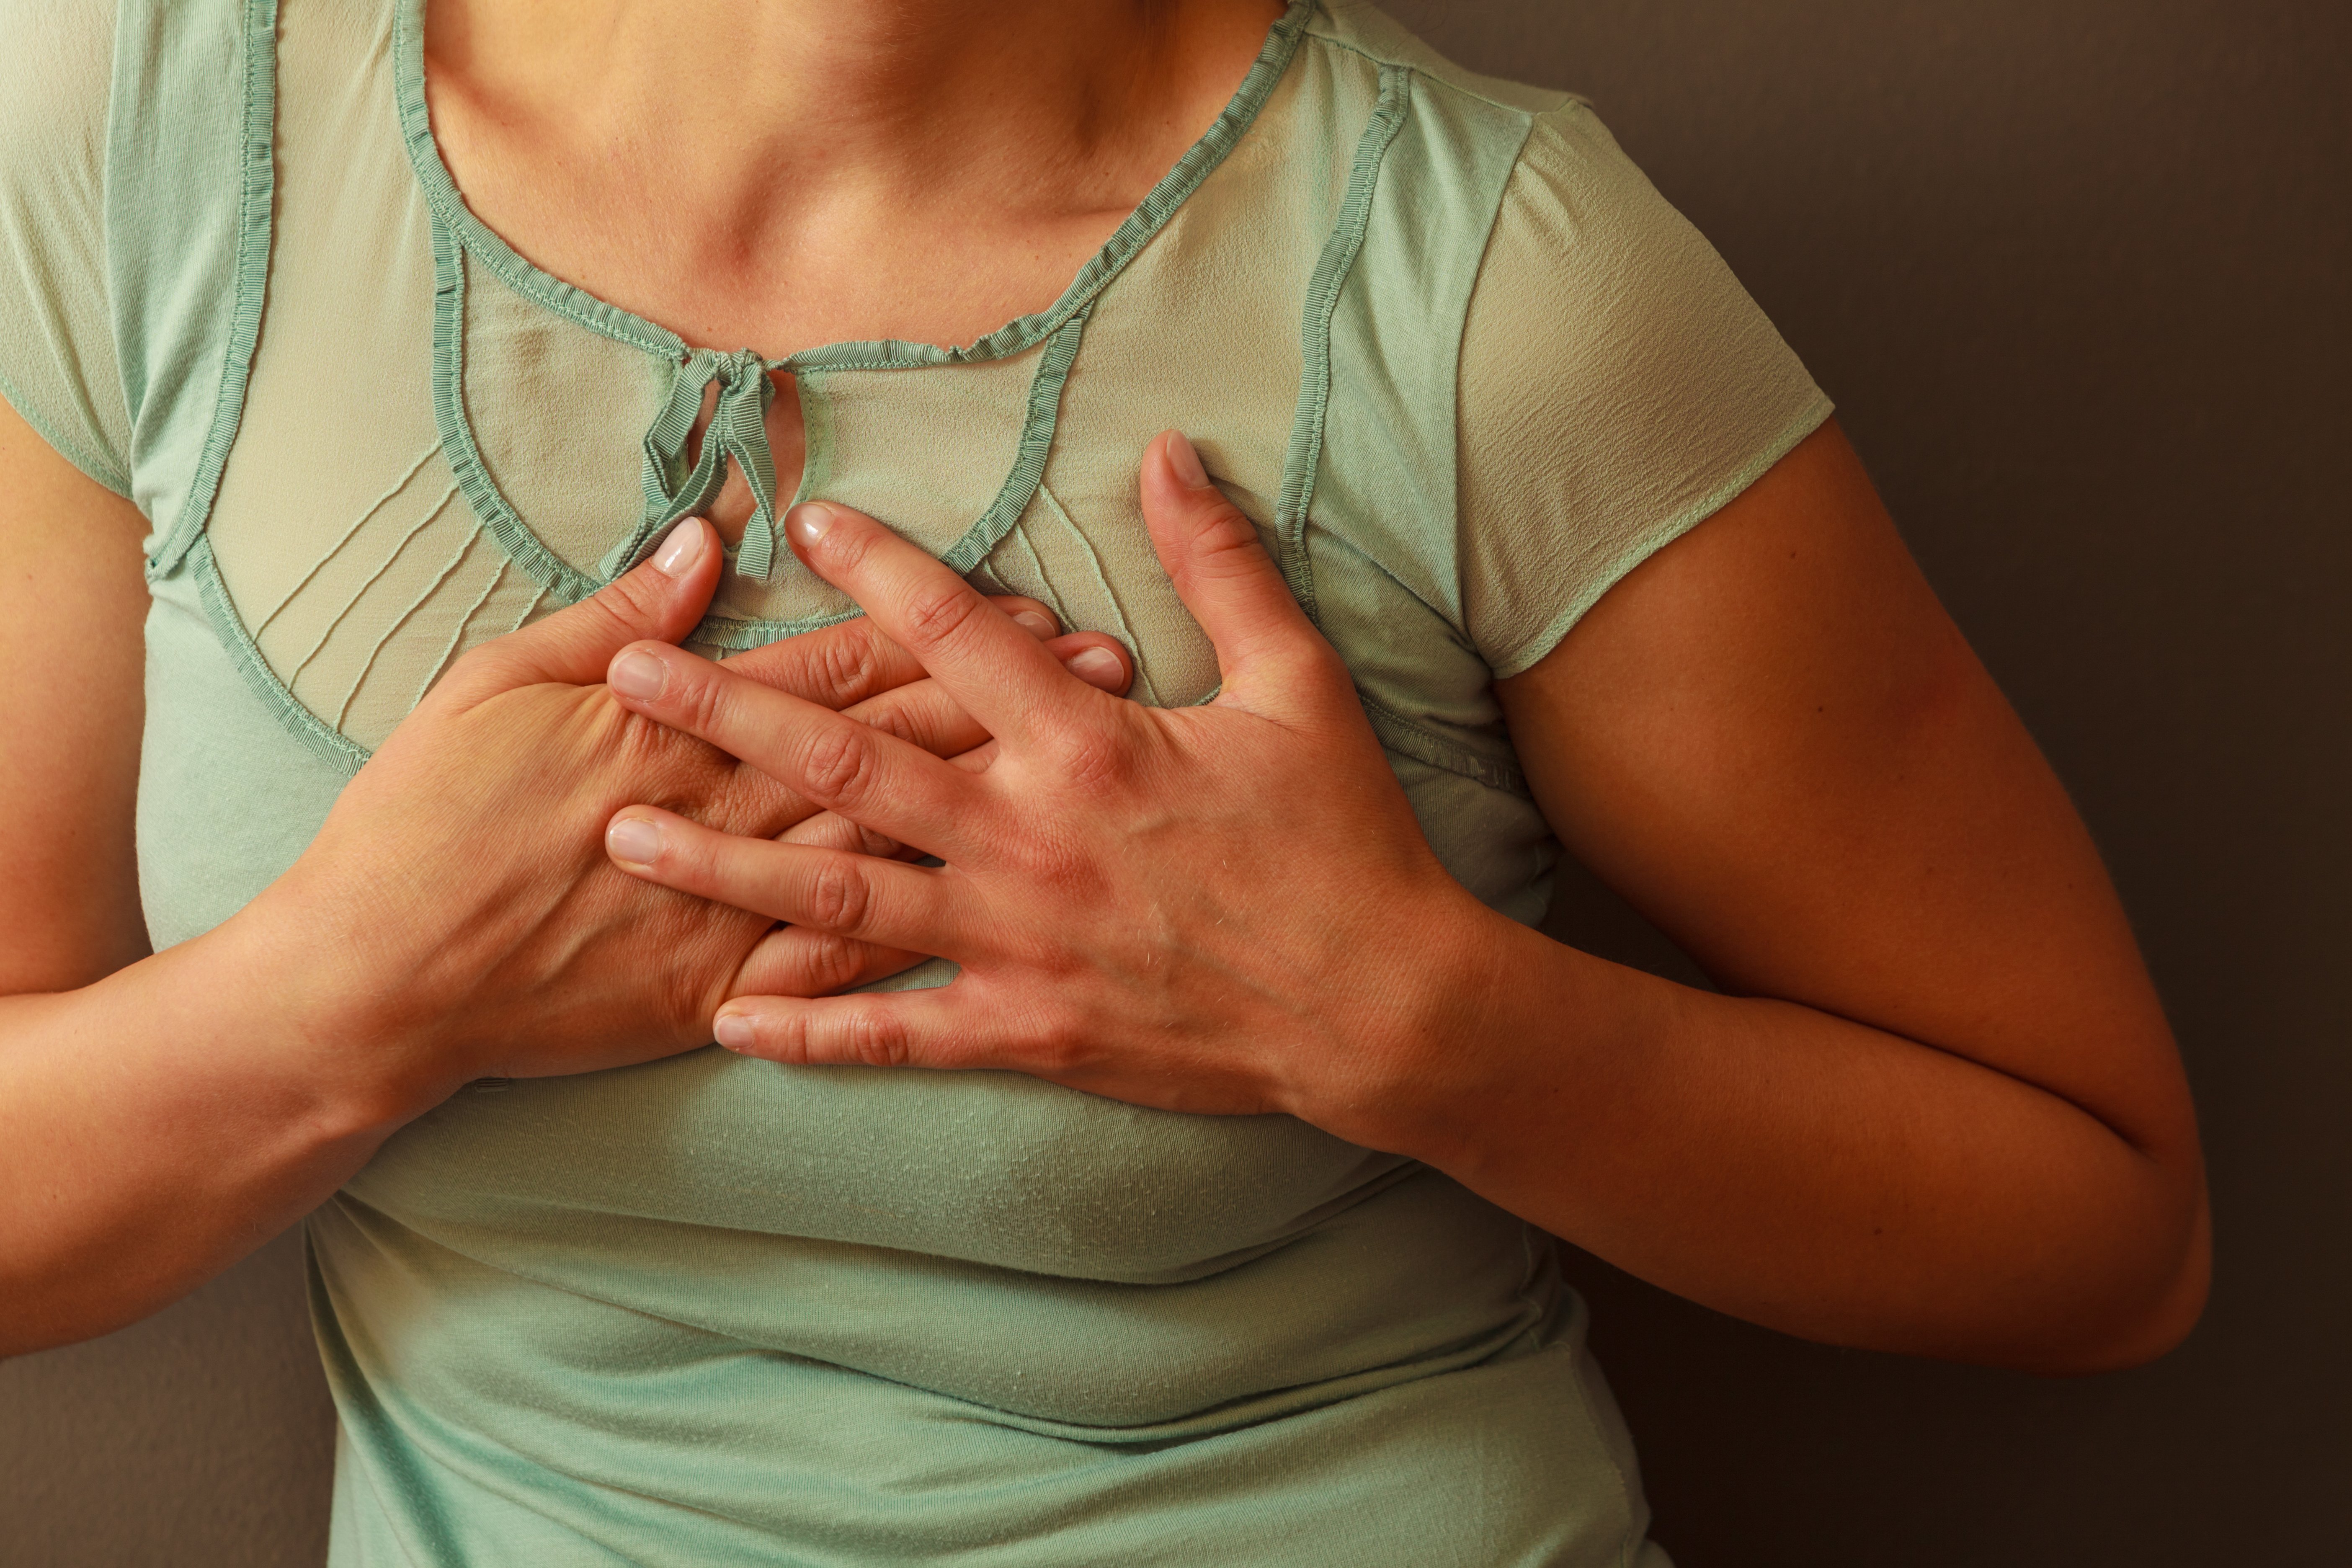 Frau greift sich an die Brust | Quelle: Shutterstock